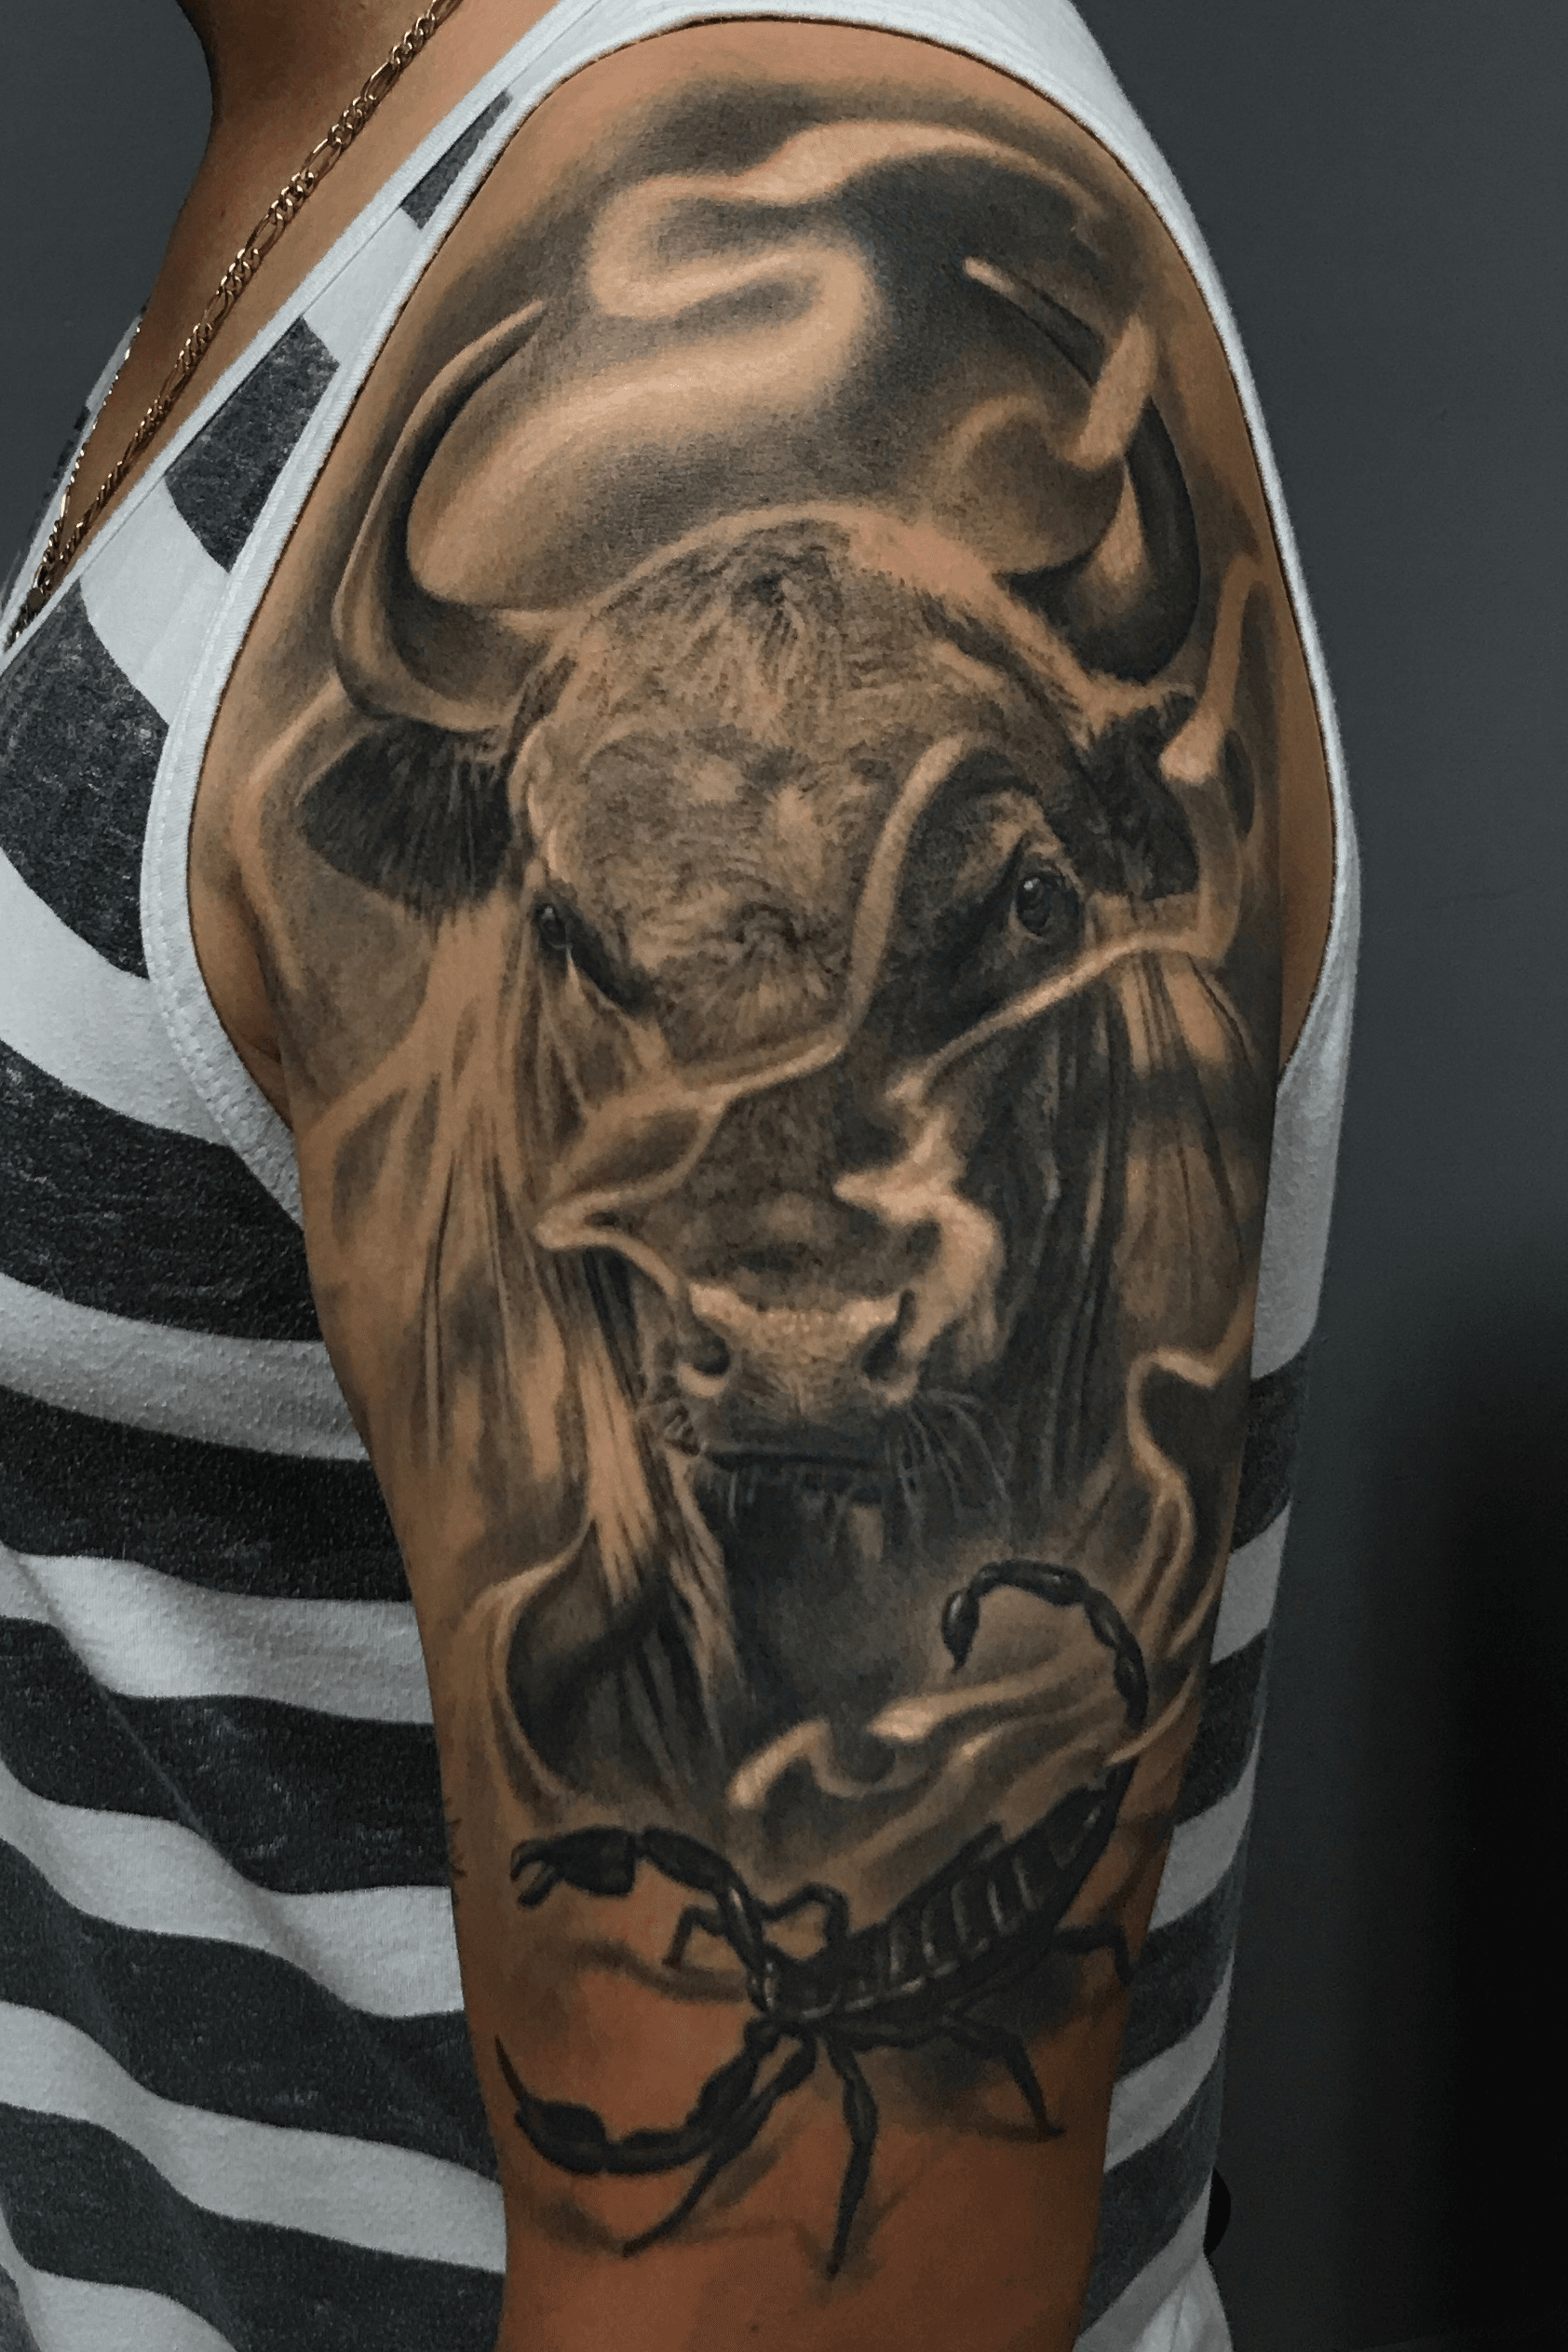 150 Clip Art Of A Bull Tattoo Designs Illustrations RoyaltyFree Vector  Graphics  Clip Art  iStock